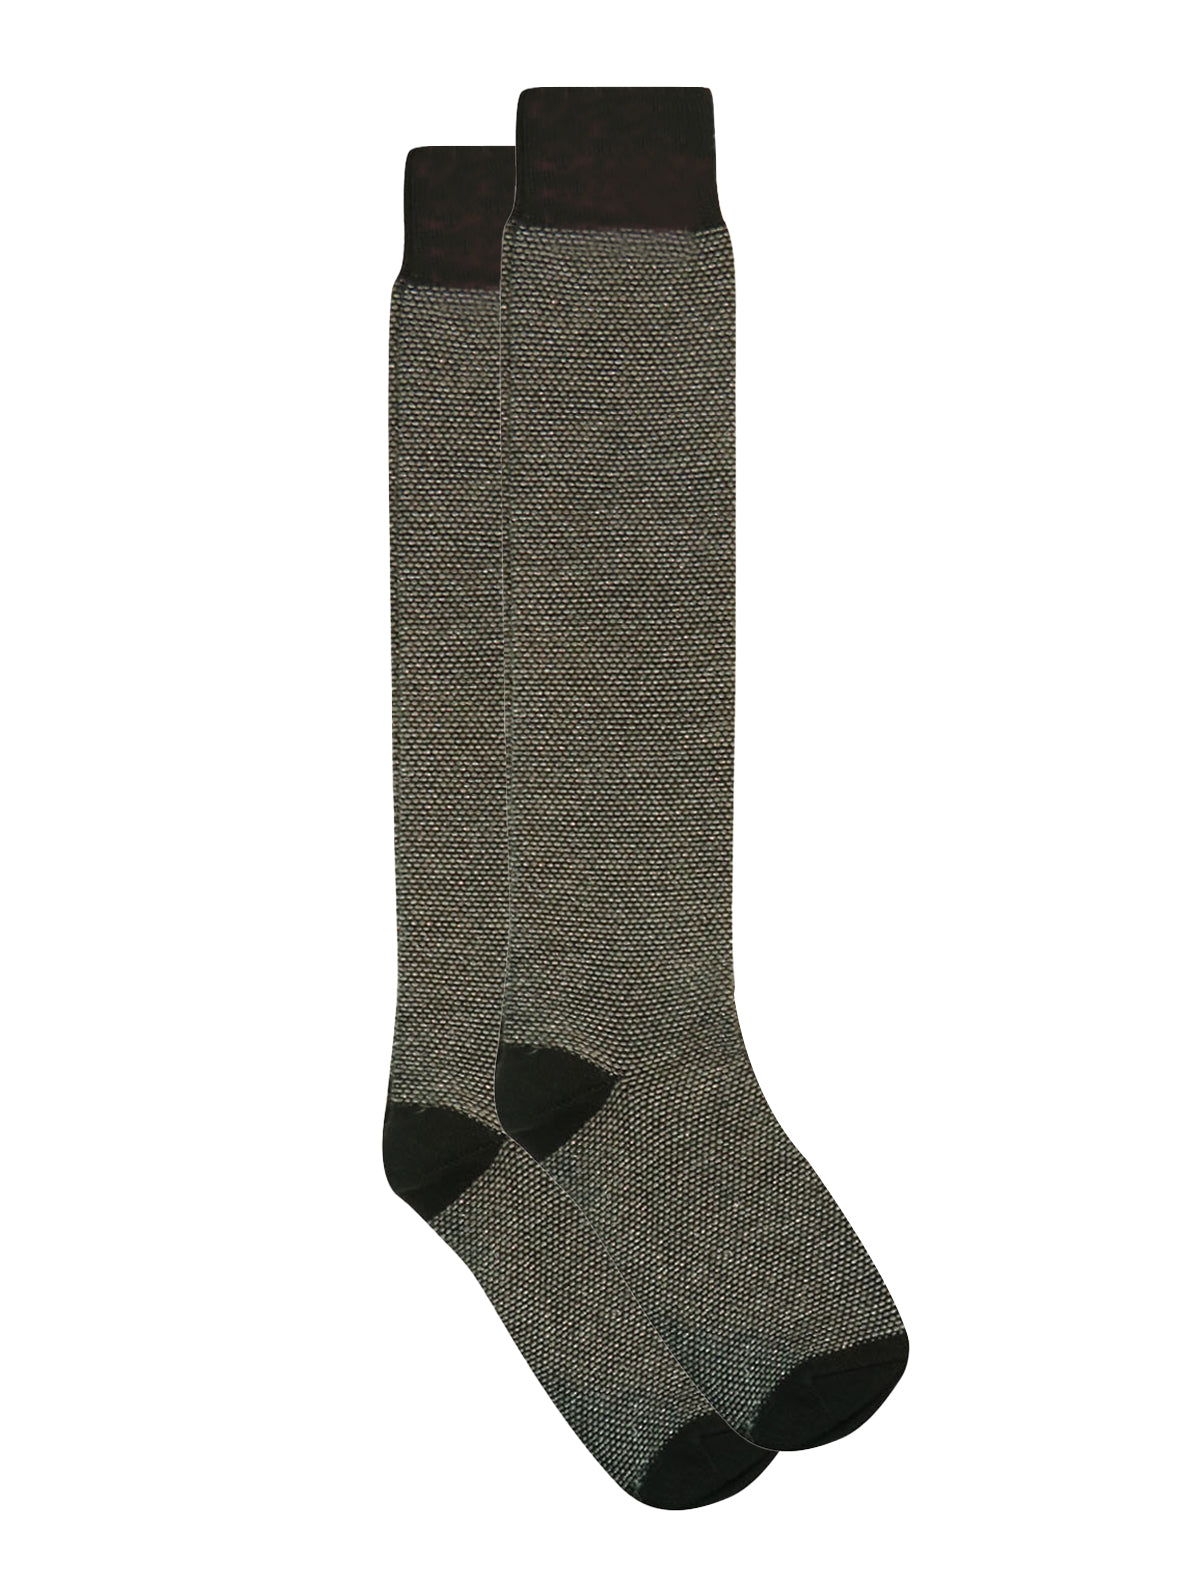 Gallo Long Socks in Black w/ Studs